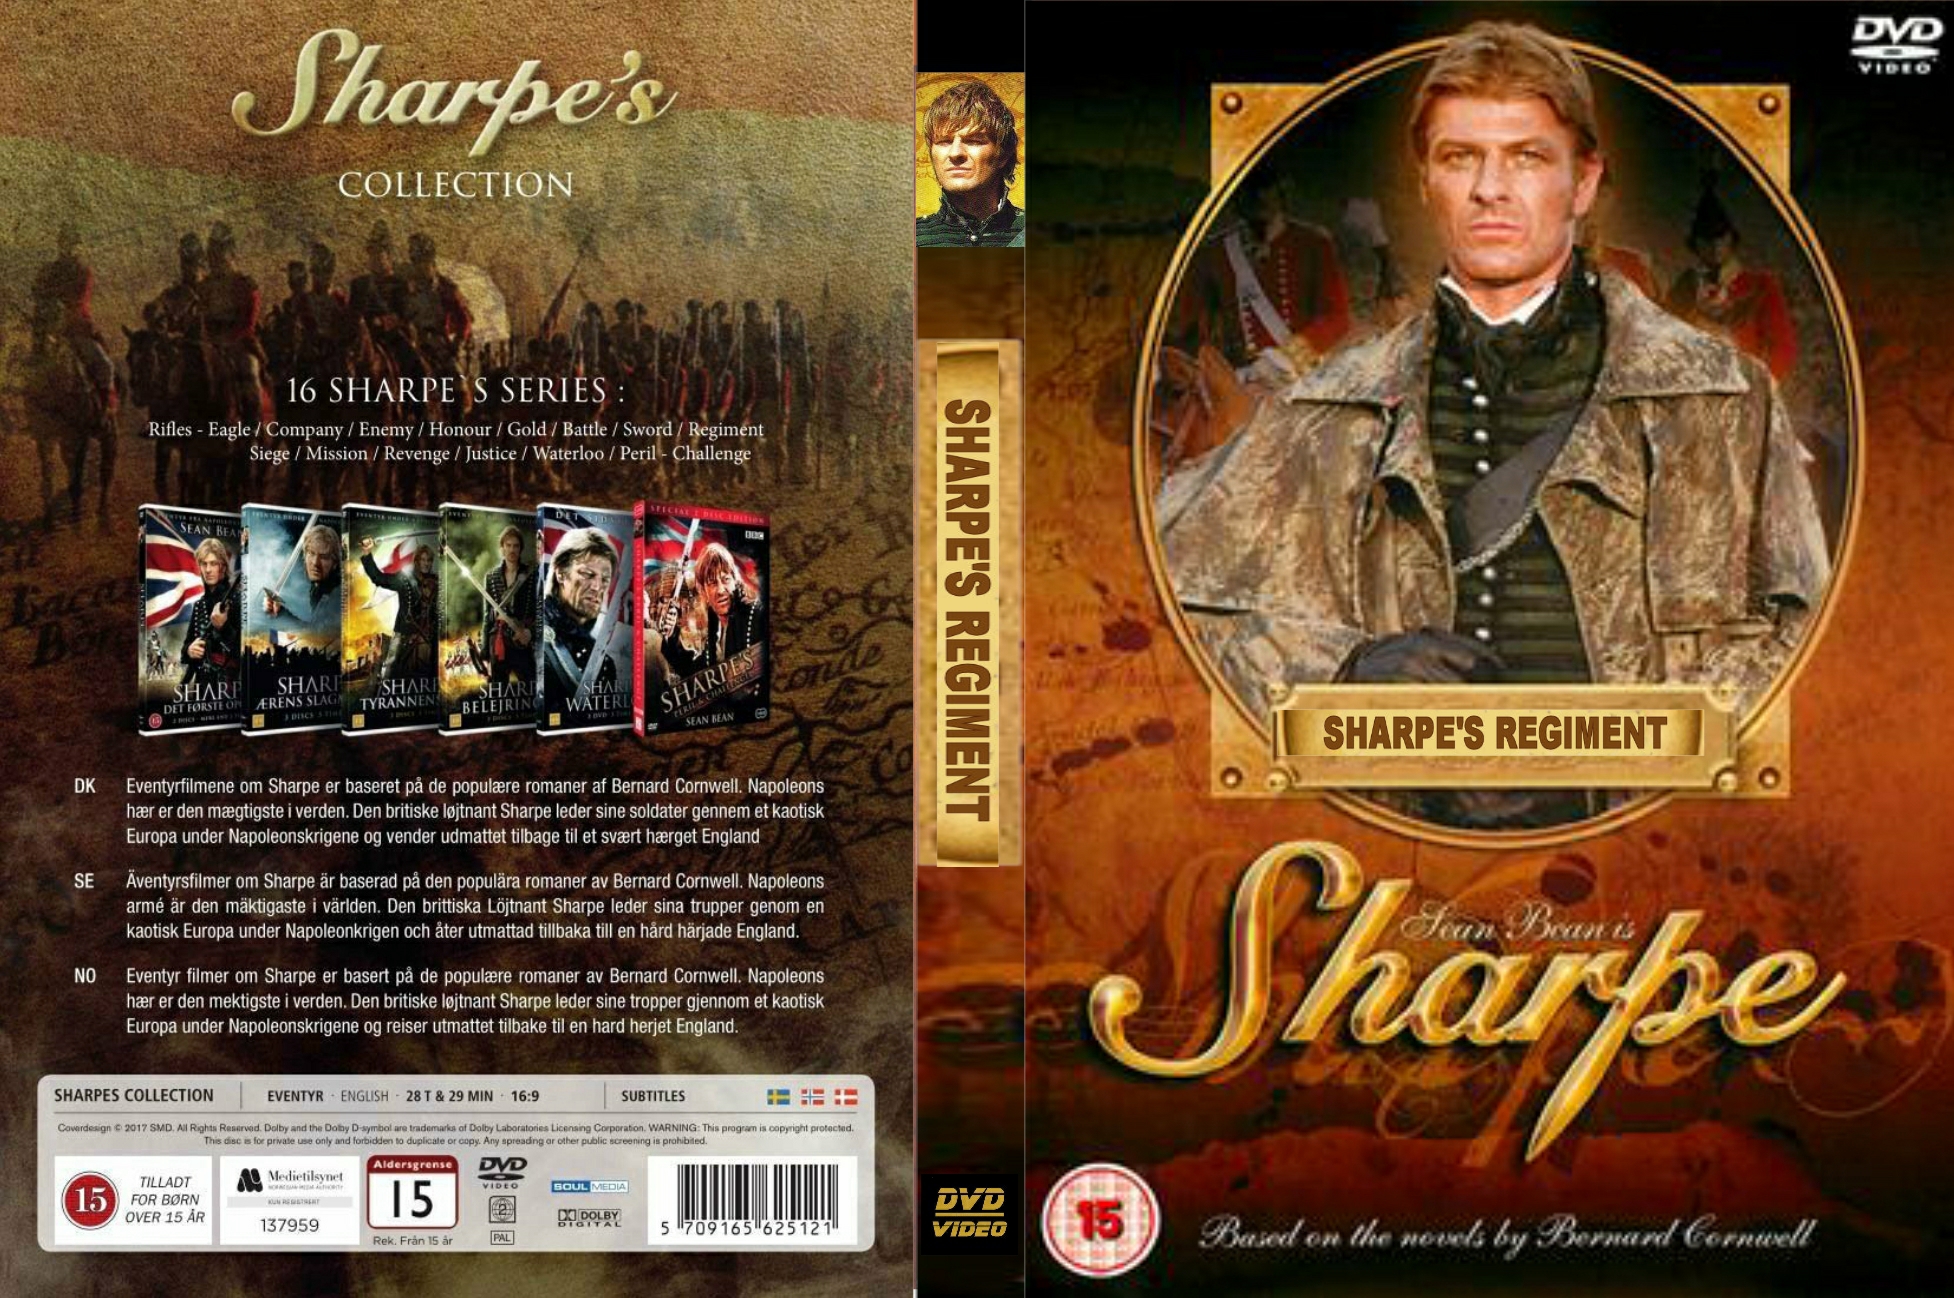 Sharpe's Regiment - DvD 9